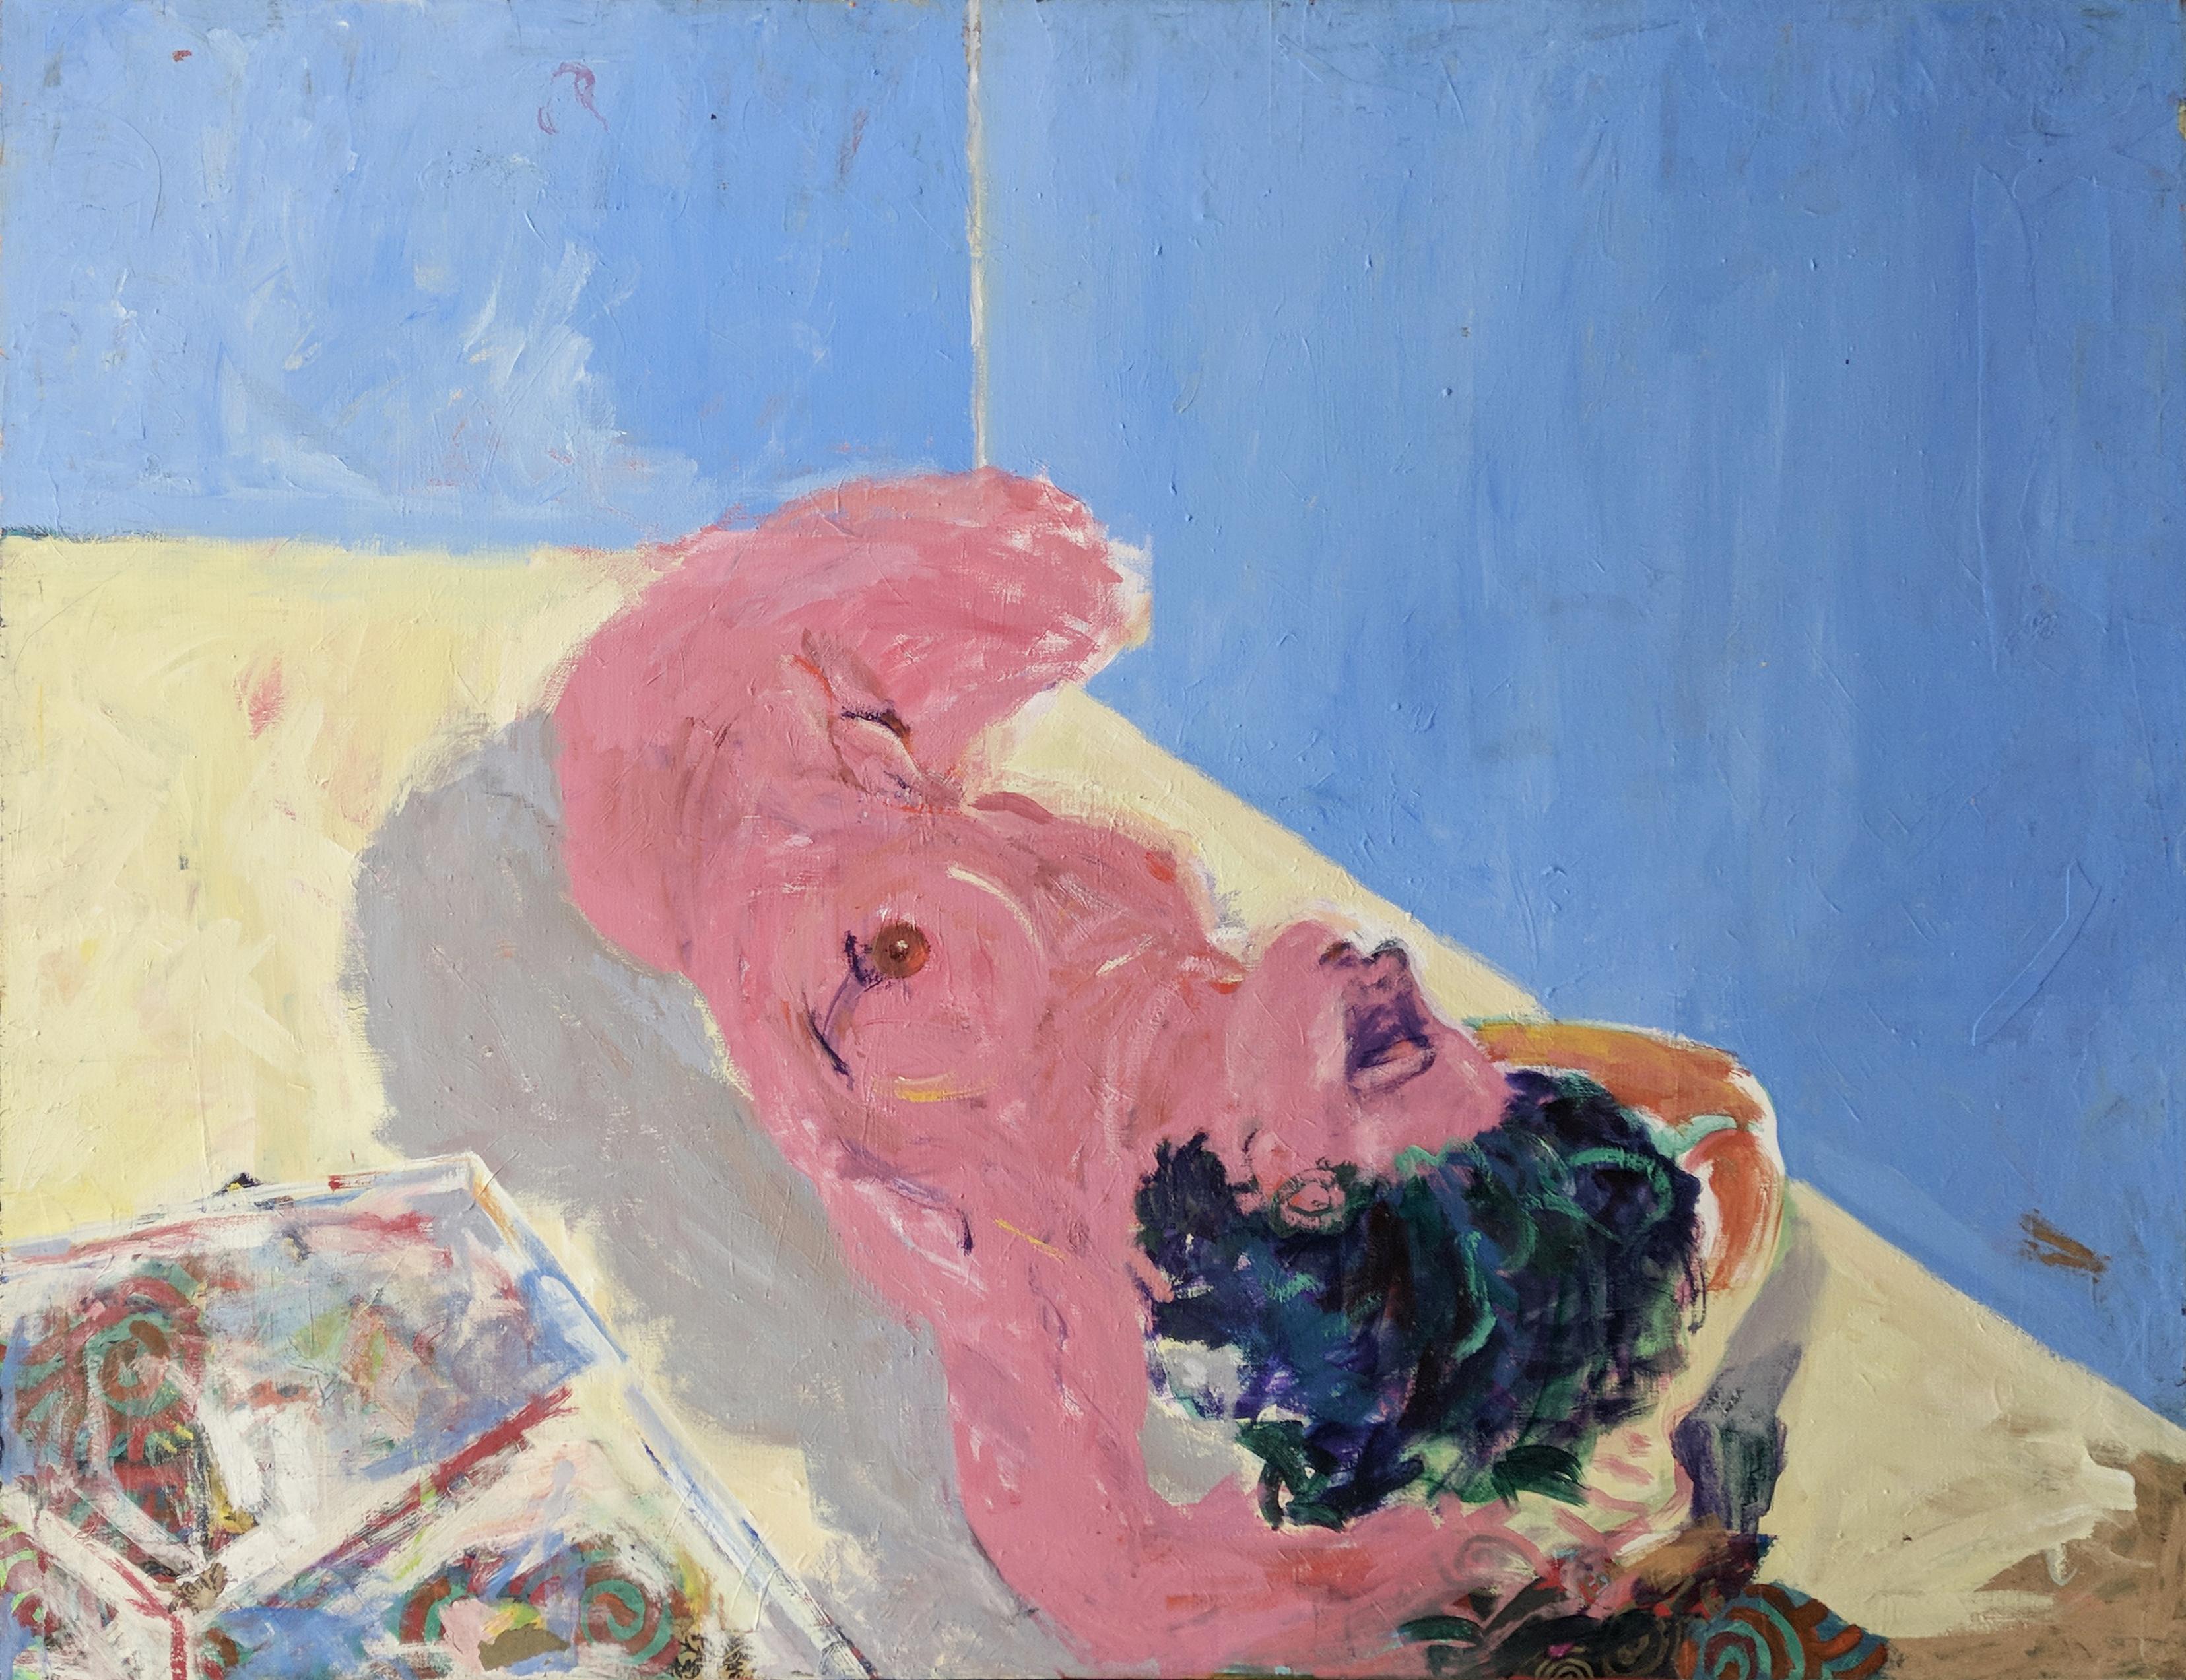 Amanda Watt Nude Painting - BEDROOM IN PROGRESS